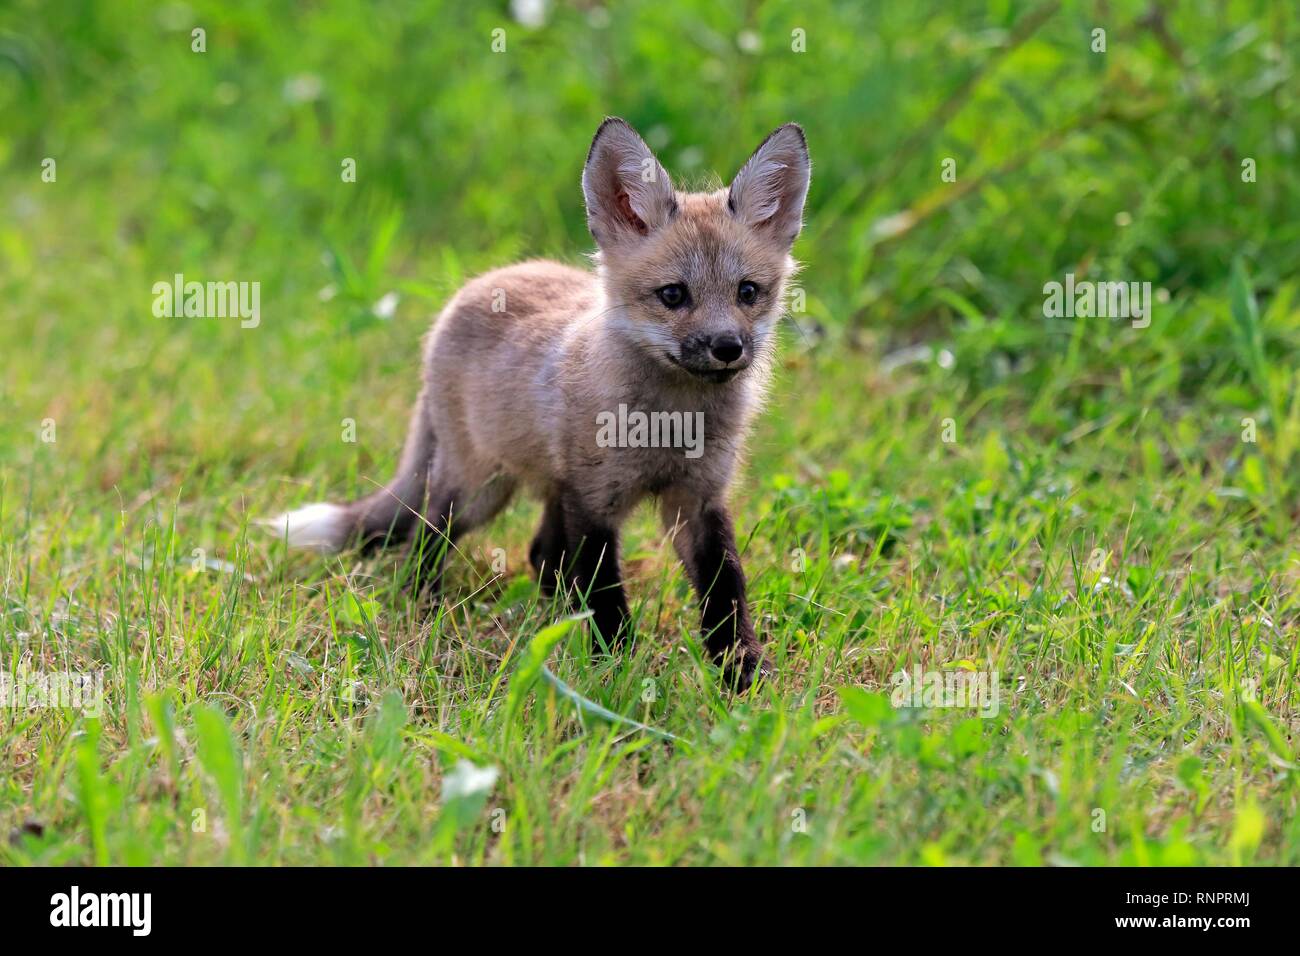 Orientale americana Red Fox (Vulpes vulpes fulvus), giovane animale in esecuzione nel prato, Pino County, Minnesota, Stati Uniti d'America Foto Stock